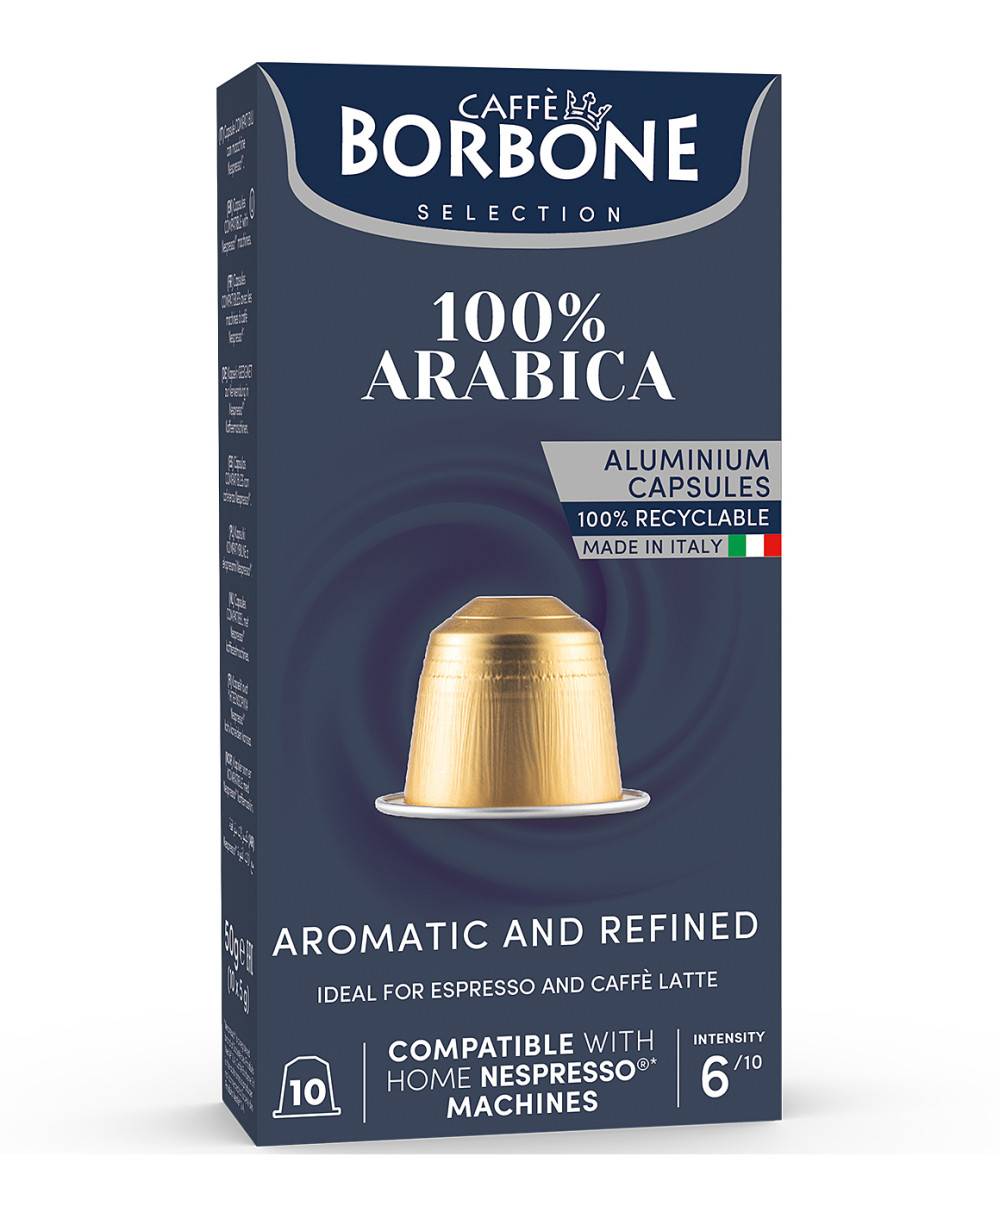 Borbone Caffé Nespresso x10 caps. - 100% Arabica 50g 